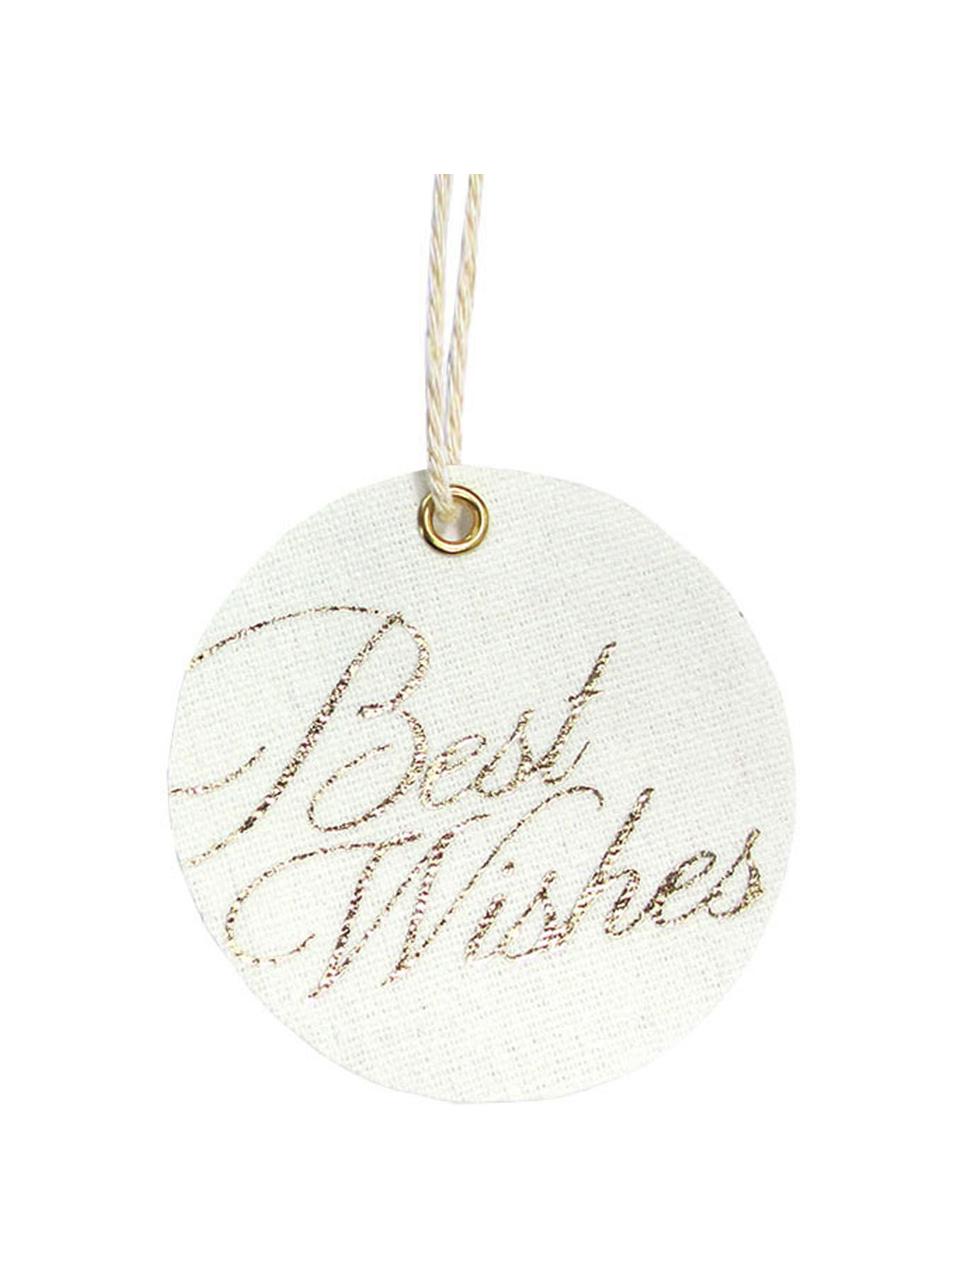 Geschenkanhänger-Set Best Wishes, 6 Stück, 60% Baumwolle, 40% Polyester, Weiss, Goldfarben, Ø 6 x H 6 cm